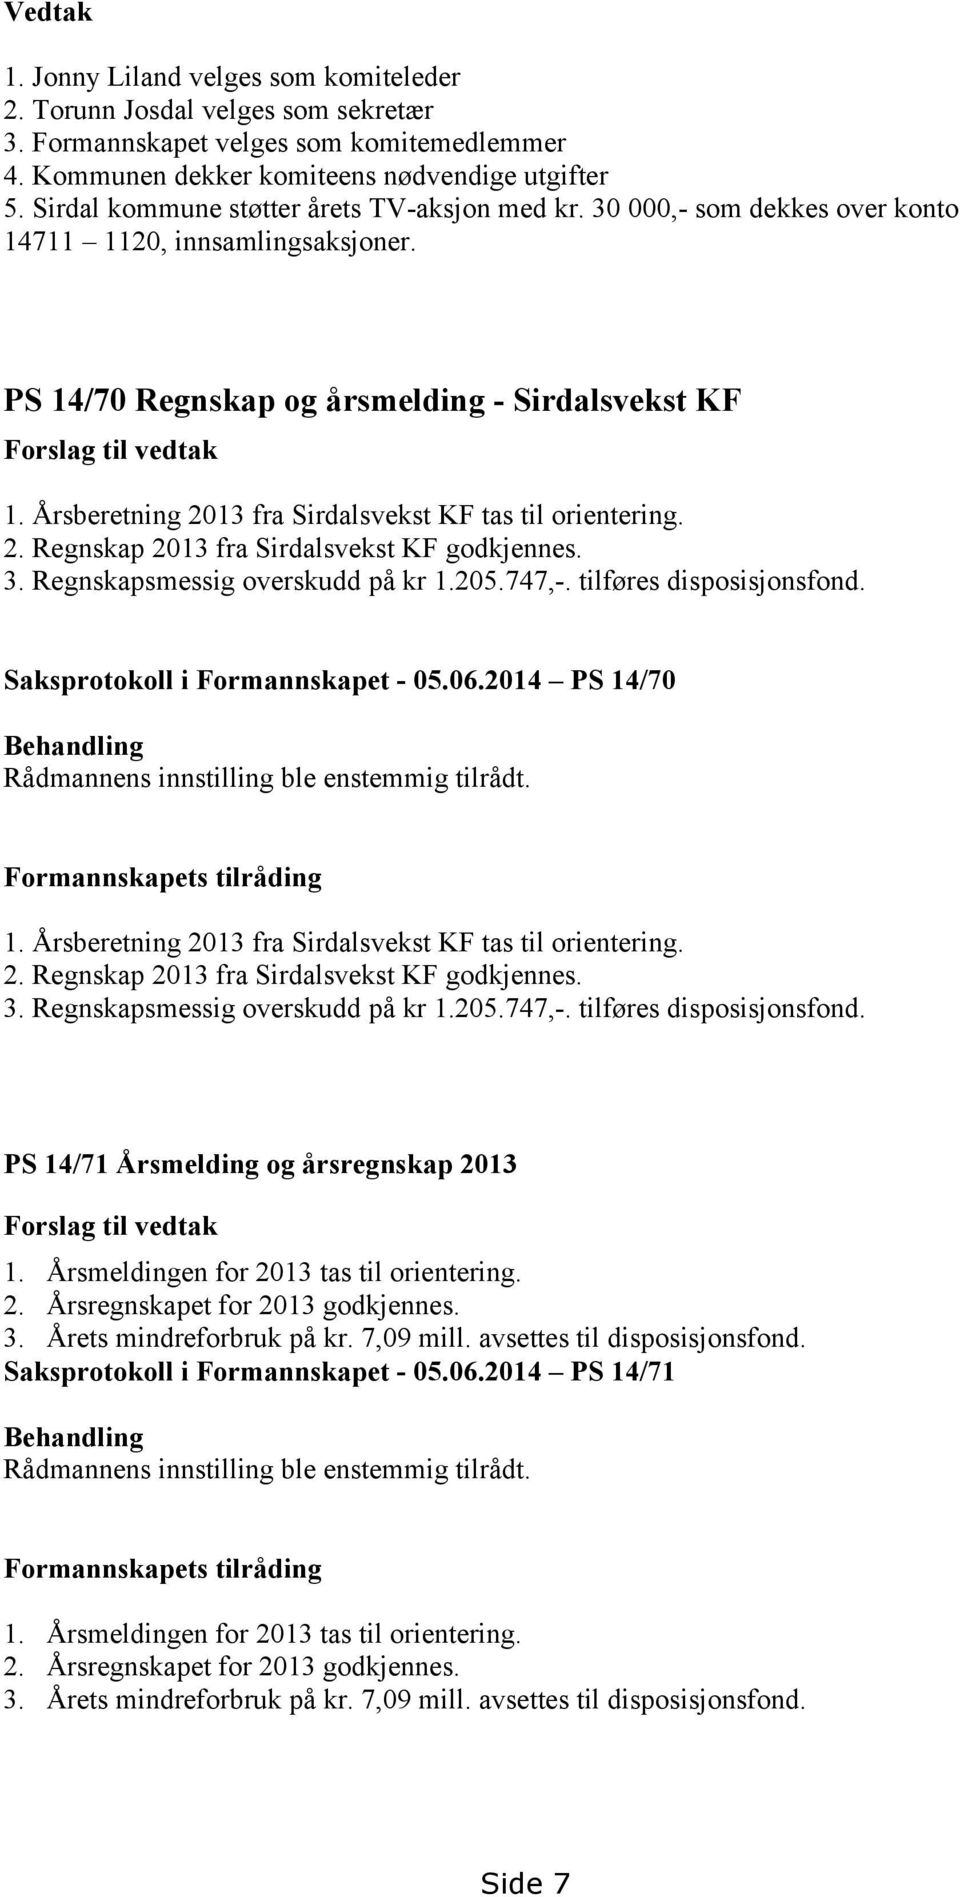 Årsberetning 2013 fra Sirdalsvekst KF tas til orientering. 2. Regnskap 2013 fra Sirdalsvekst KF godkjennes. 3. Regnskapsmessig overskudd på kr 1.205.747,-. tilføres disposisjonsfond.